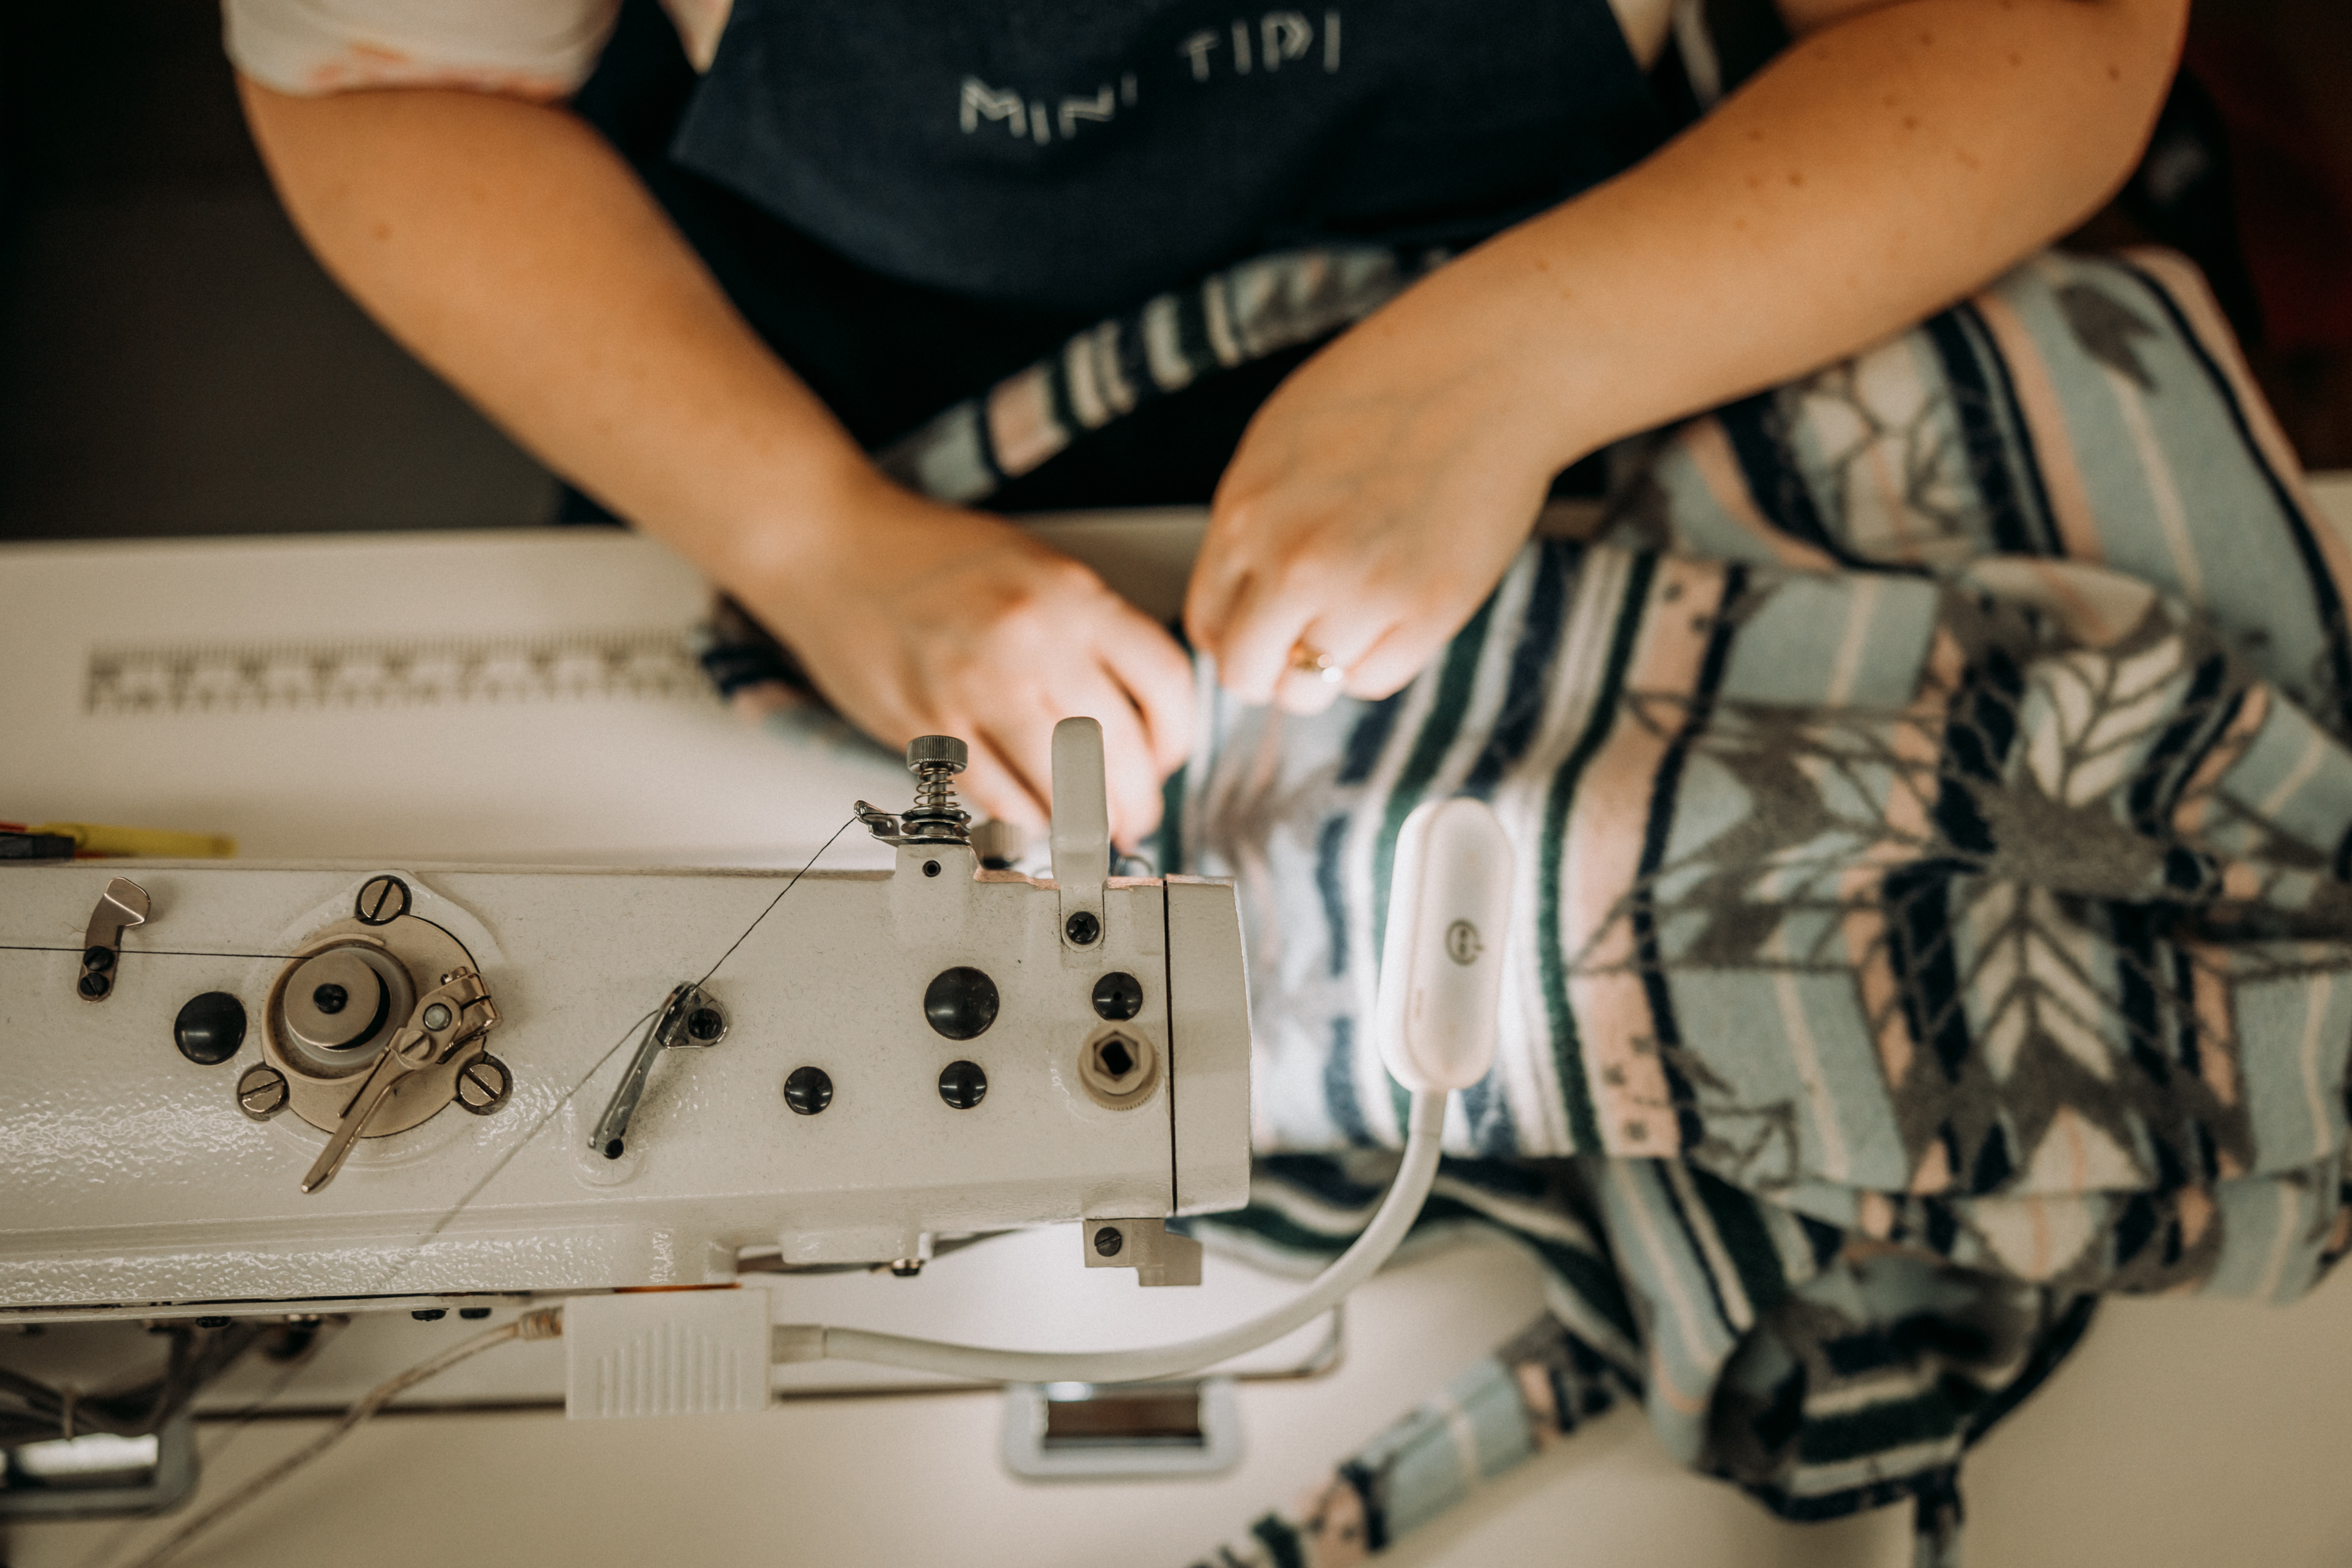 Une vue en gros plan montre les mains d’une travailleuse assise à une machine à coudre, en train de faire la finition d’un produit MINI TIPI orné de motifs traditionnels autochtones.